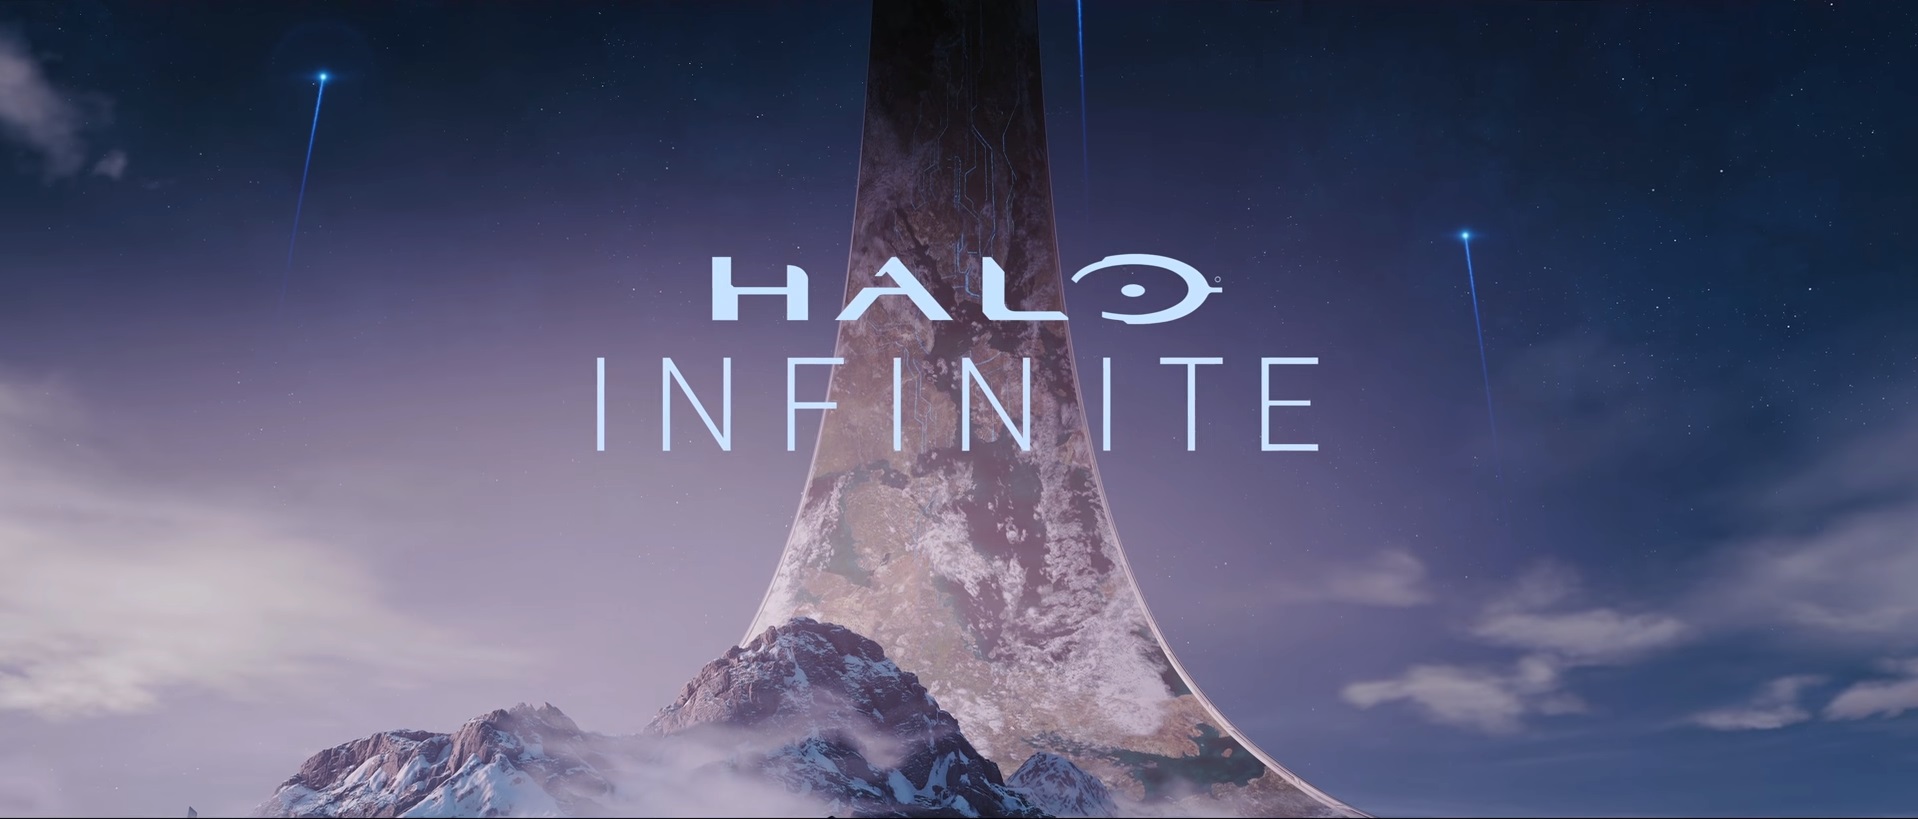 Xbox, E3 2018 sunumuna Halo Infinite ile giriş yaptı